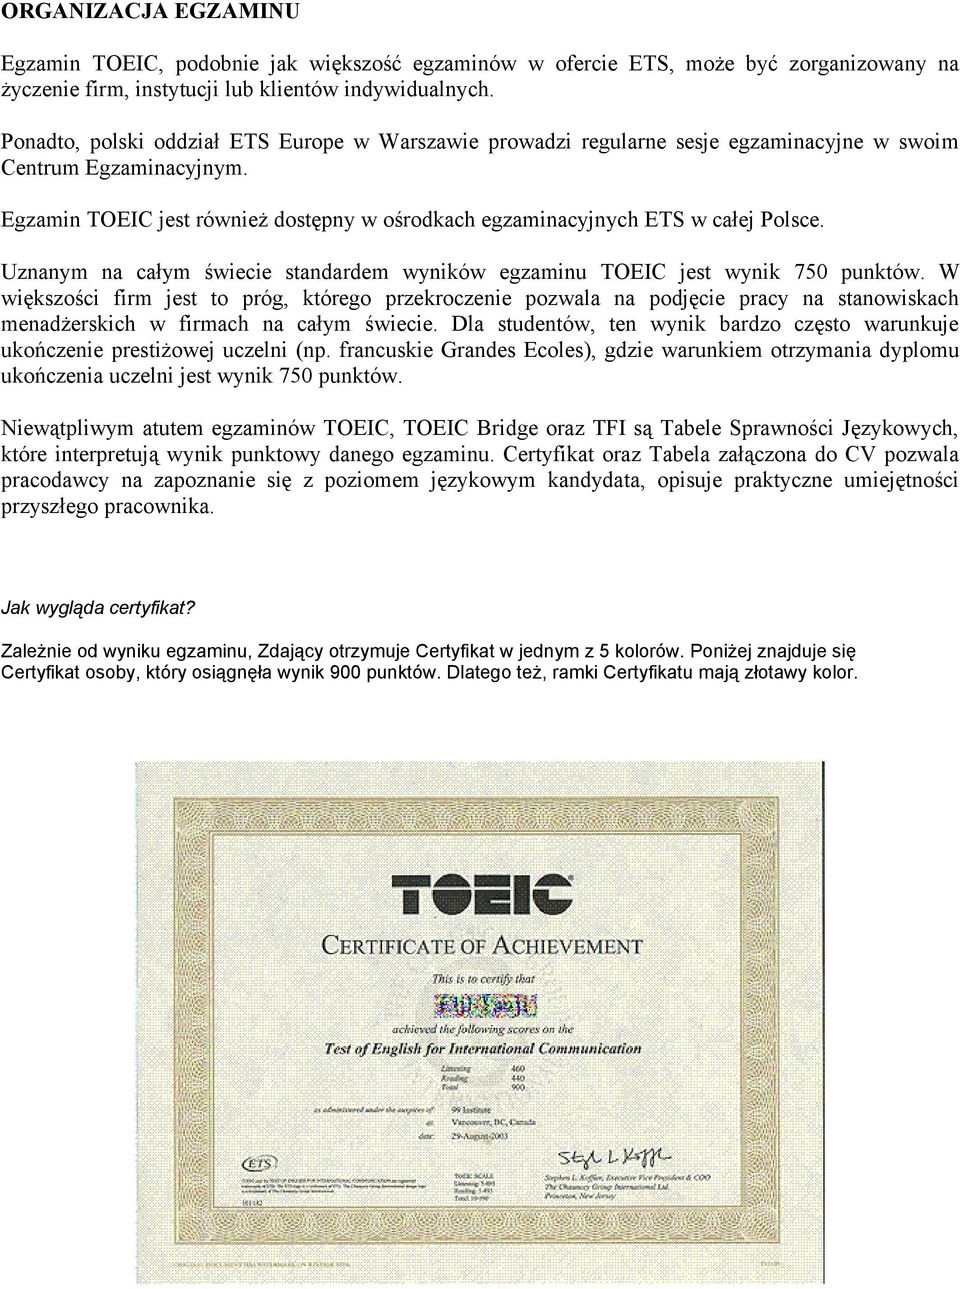 Uznanym na całym świecie standardem wyników egzaminu TOEIC jest wynik 750 punktów.